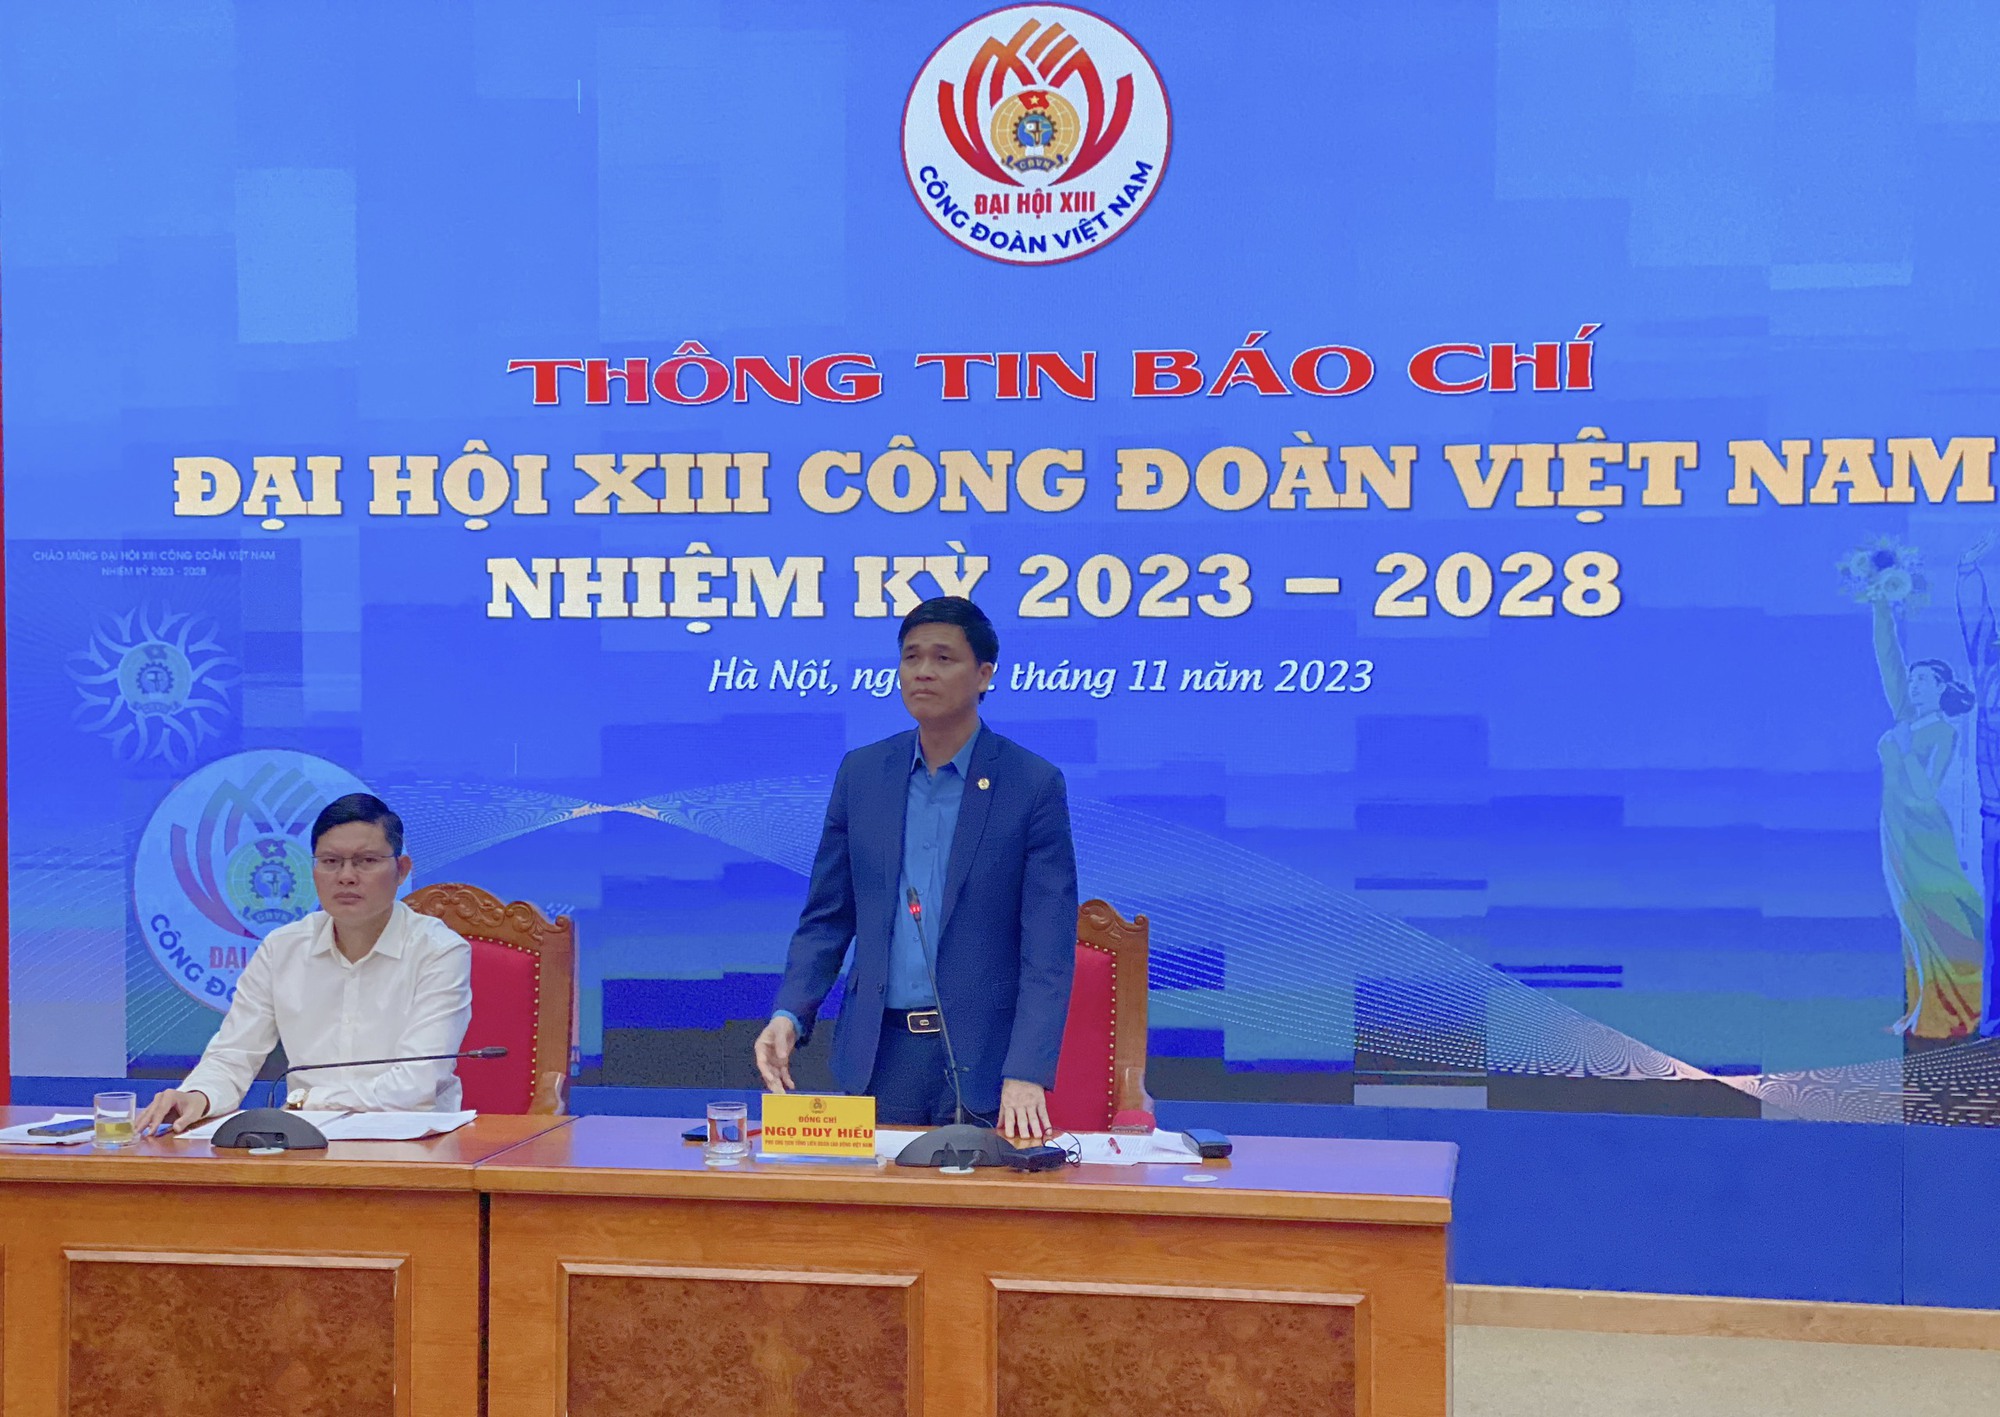 Theo dõi các nội dung tuyên truyền Đại hội XIII Công đoàn Việt Nam